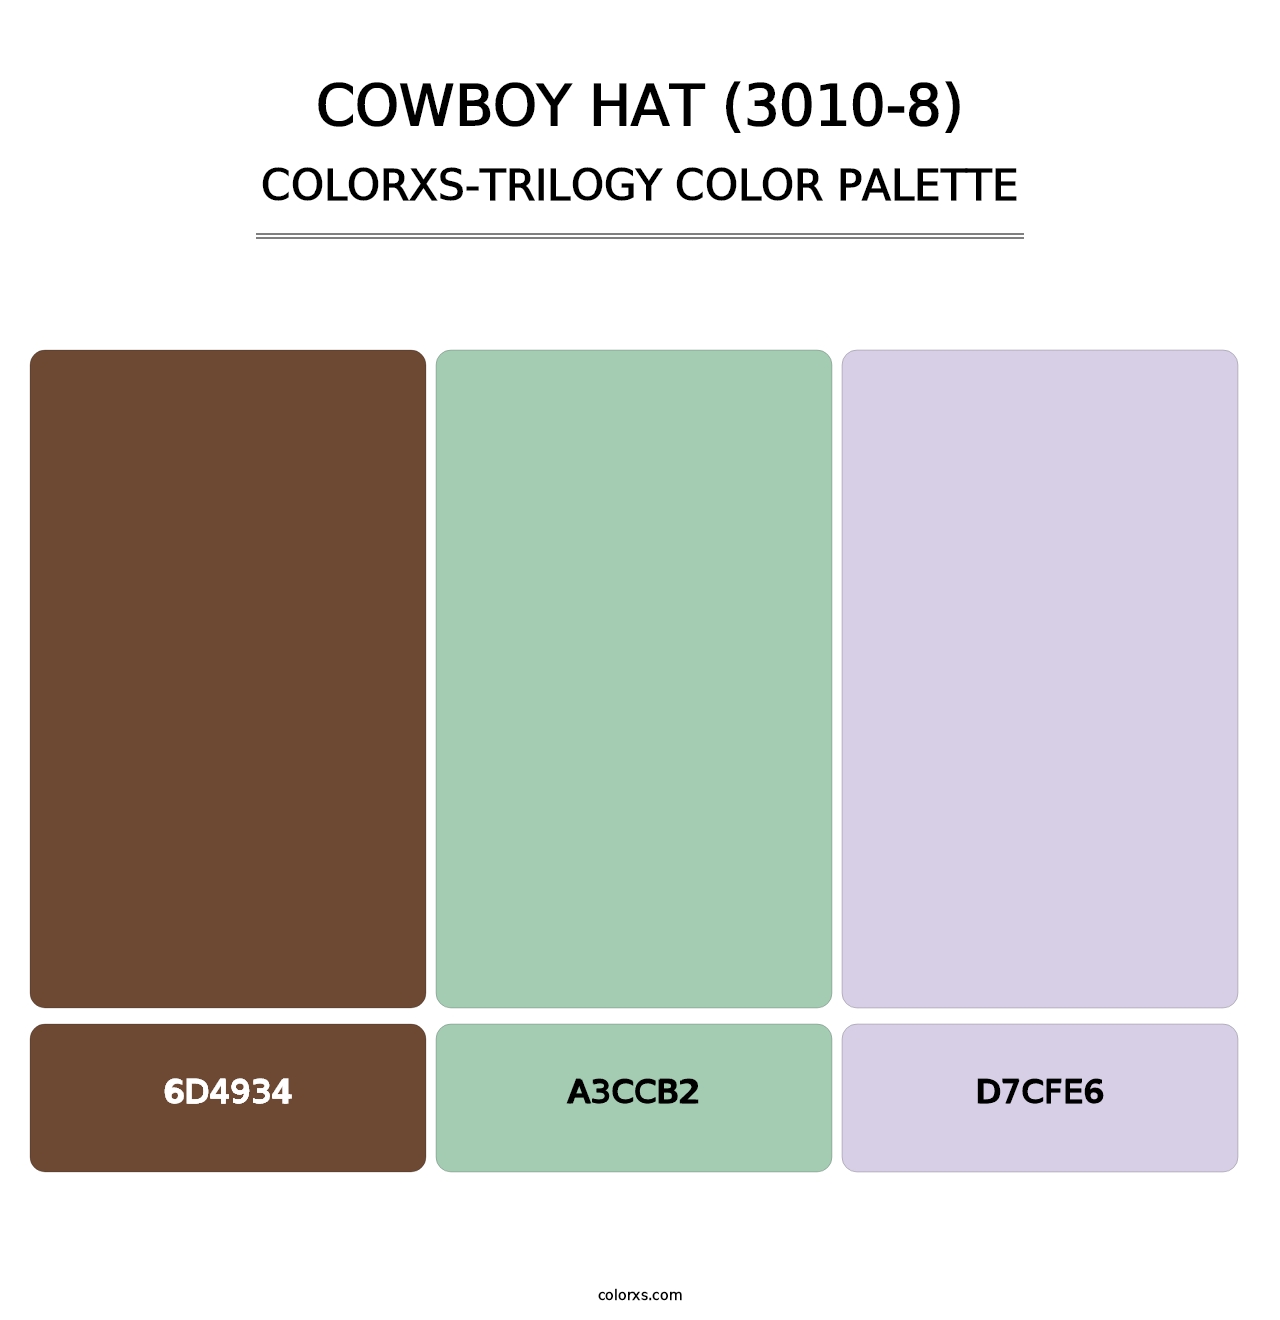 Cowboy Hat (3010-8) - Colorxs Trilogy Palette